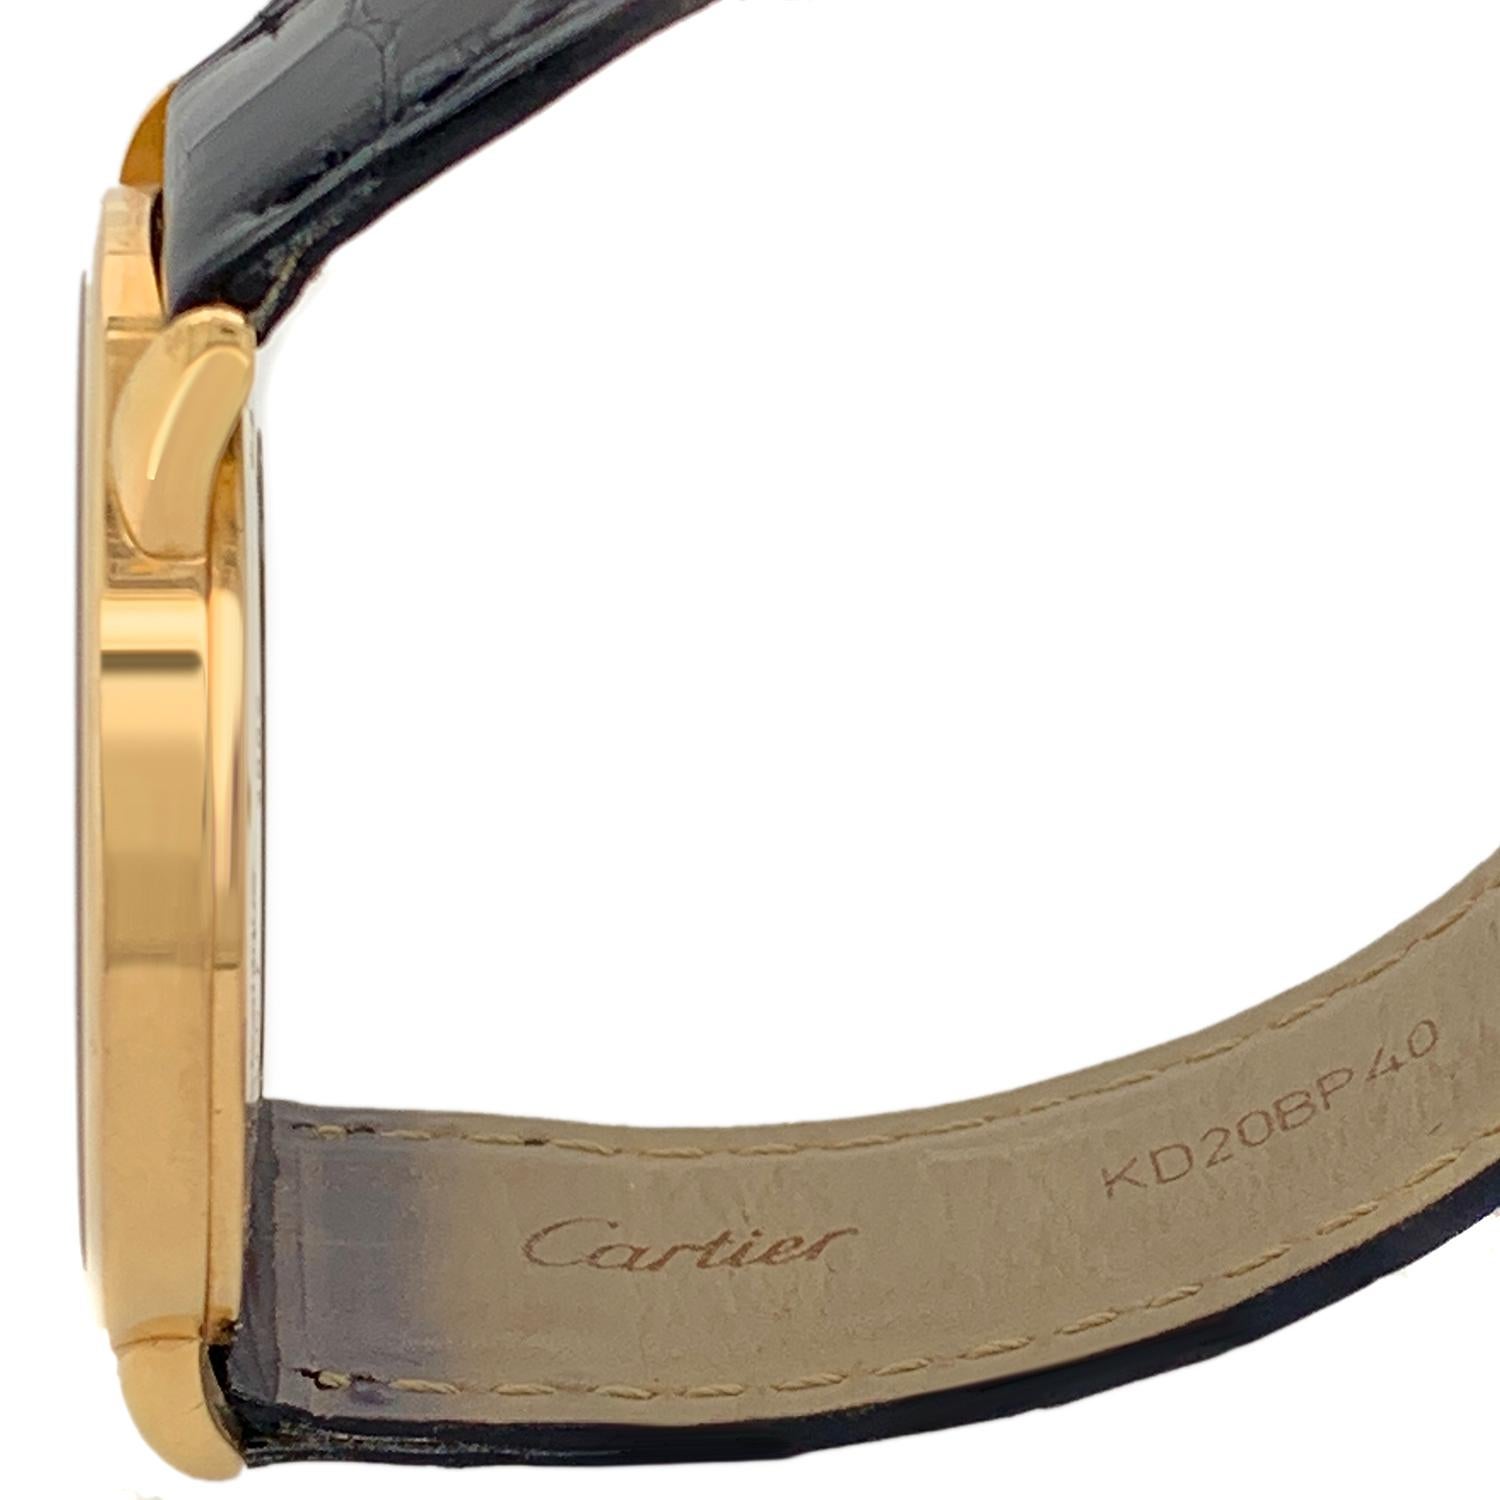 Cartier Silver Dial 18 Karat Yellow Gold Watch 7